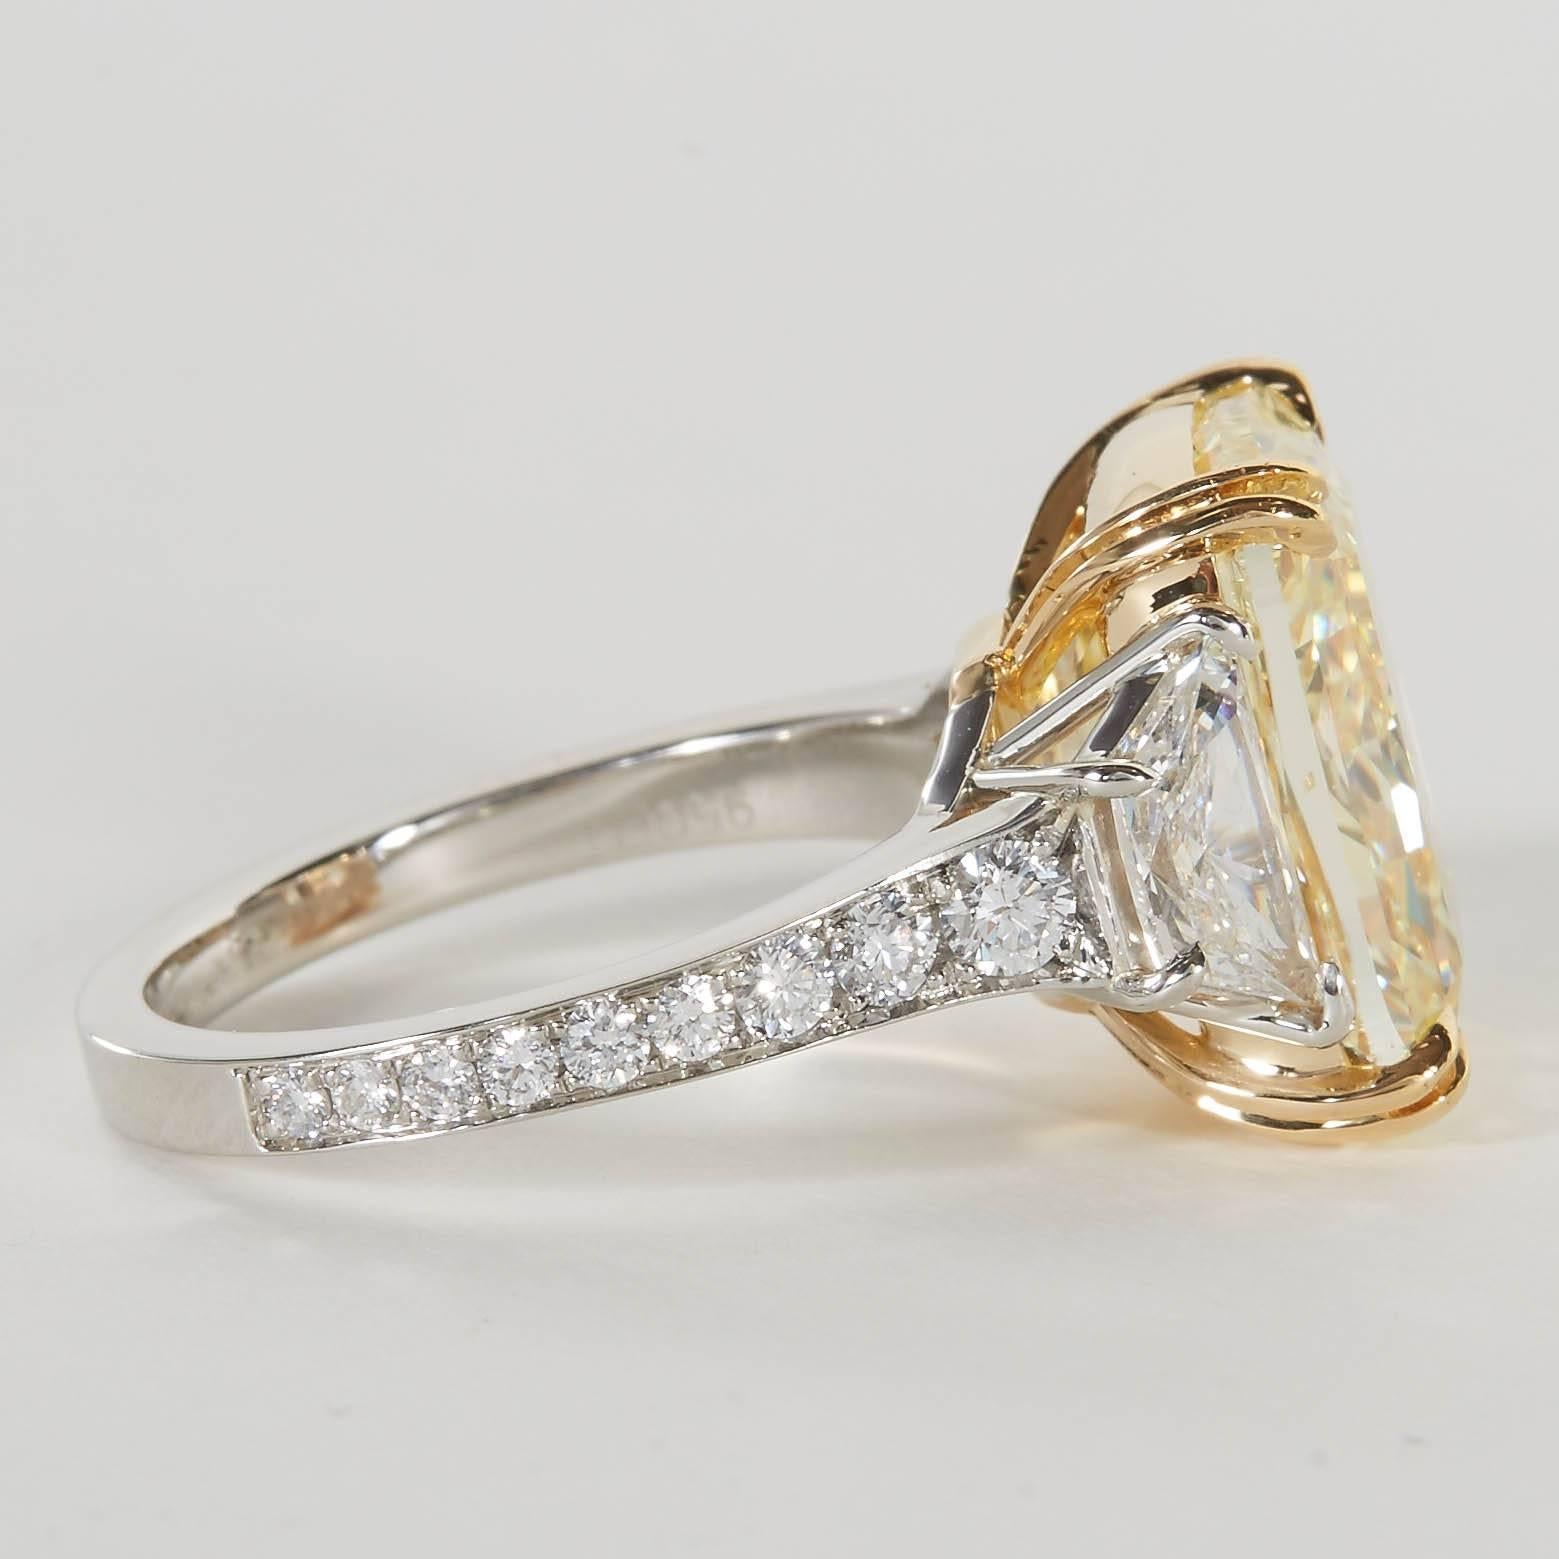 10 carat canary diamond ring price